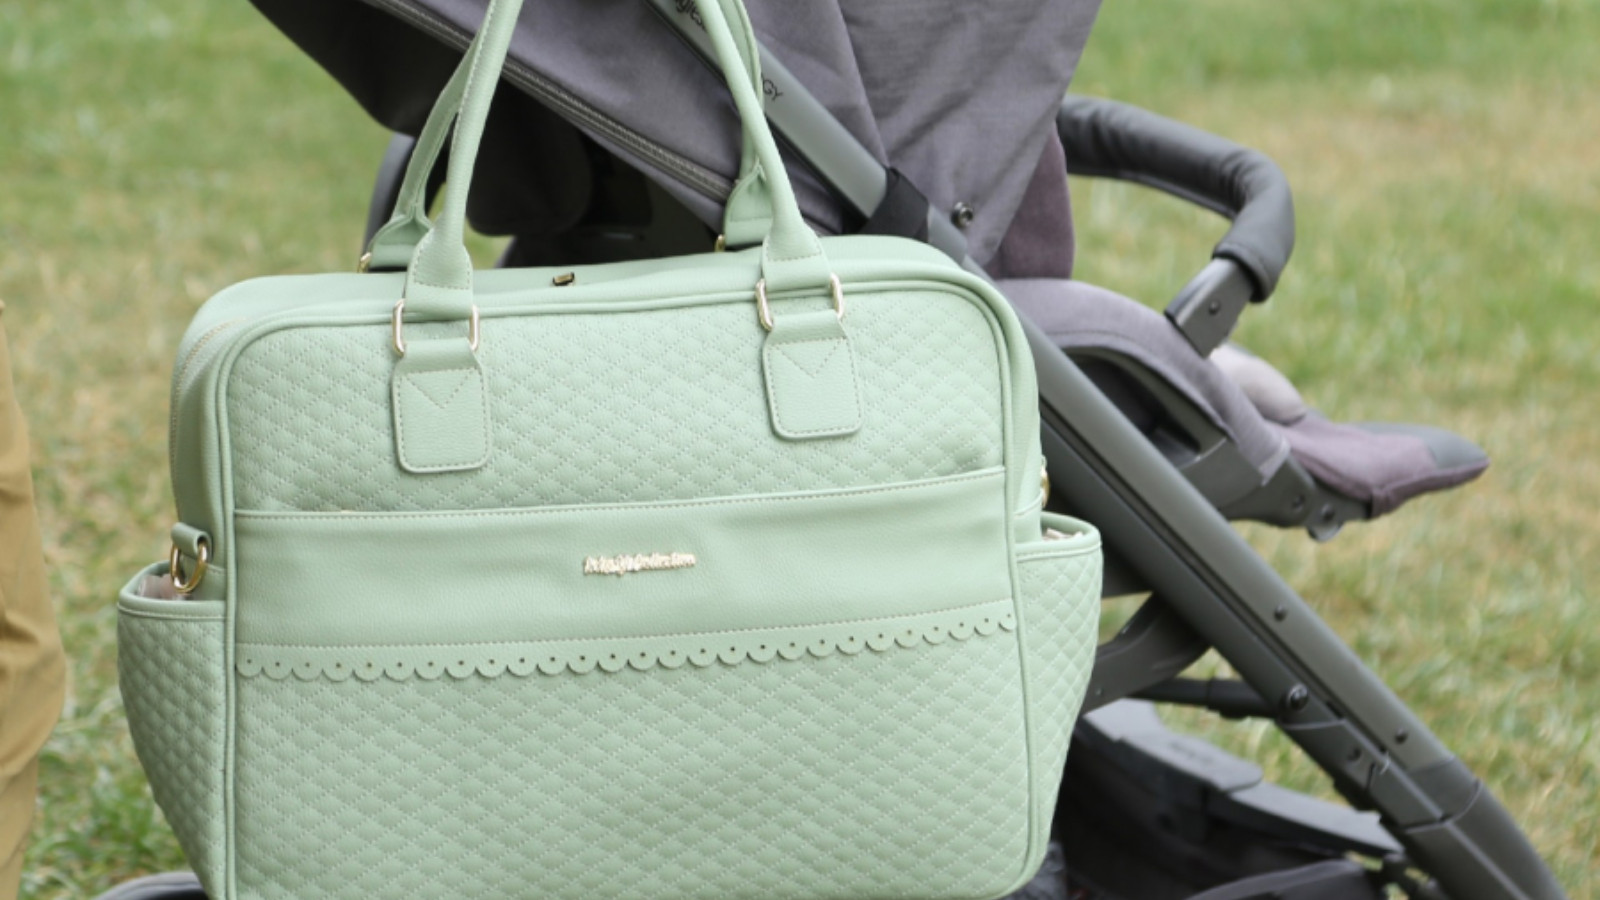 Stil sahibi anneler için trend bebek bakım çantası modelleri